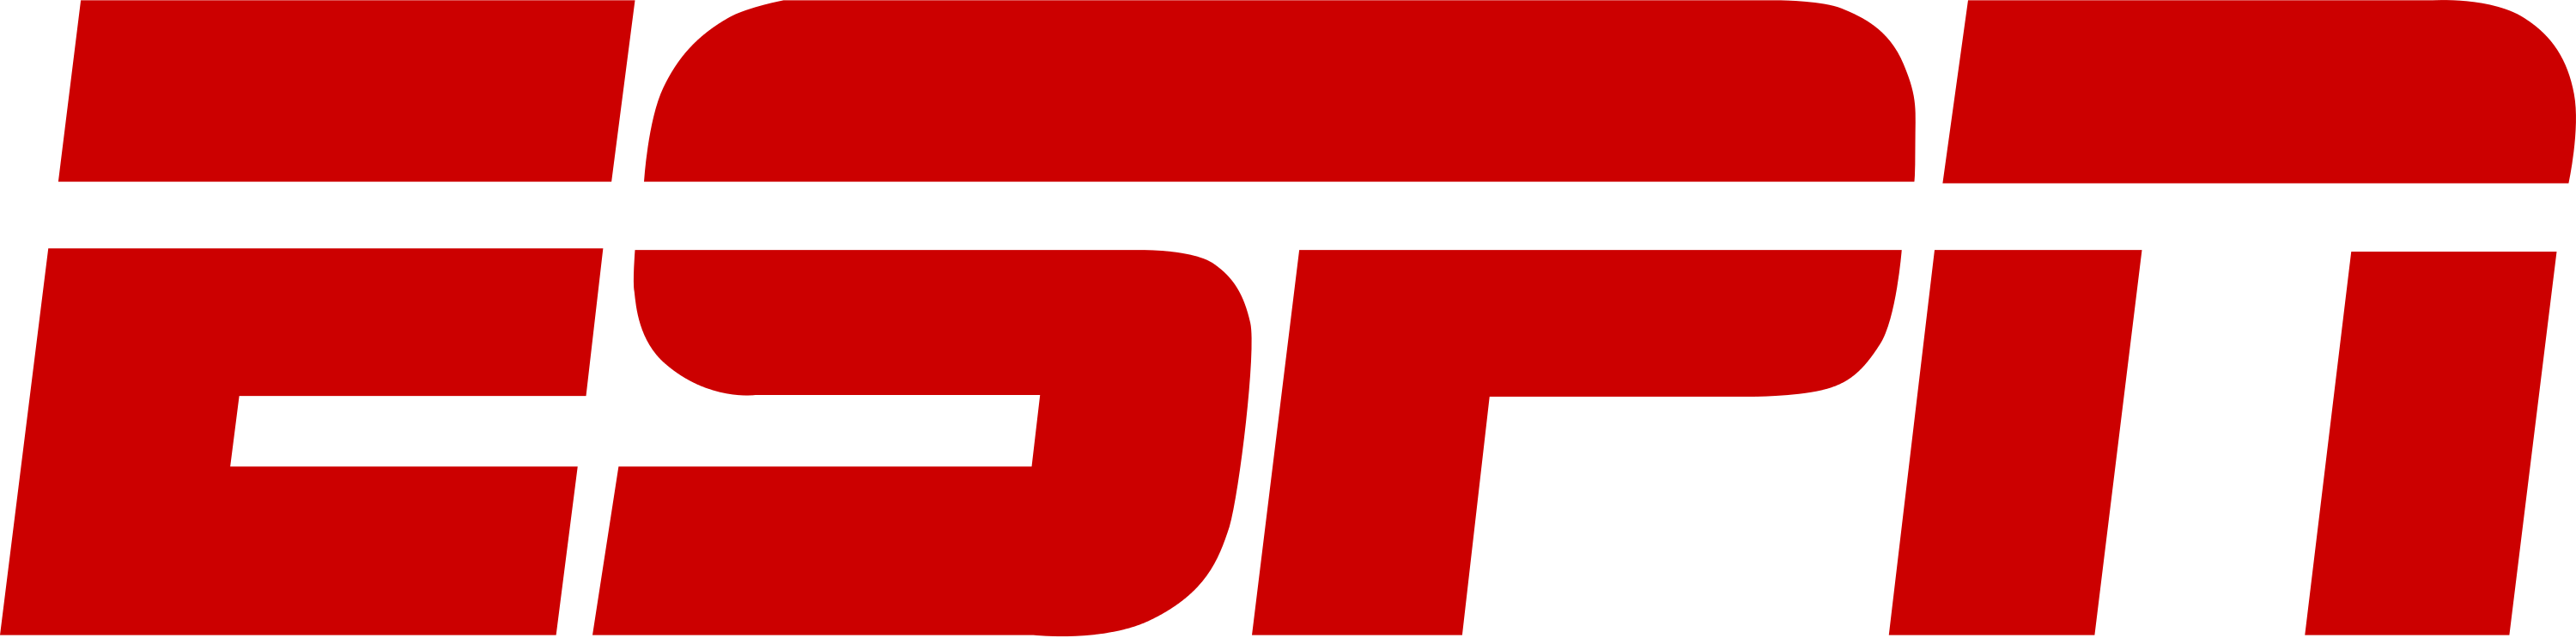 ESPN Logo PNG Image HQ